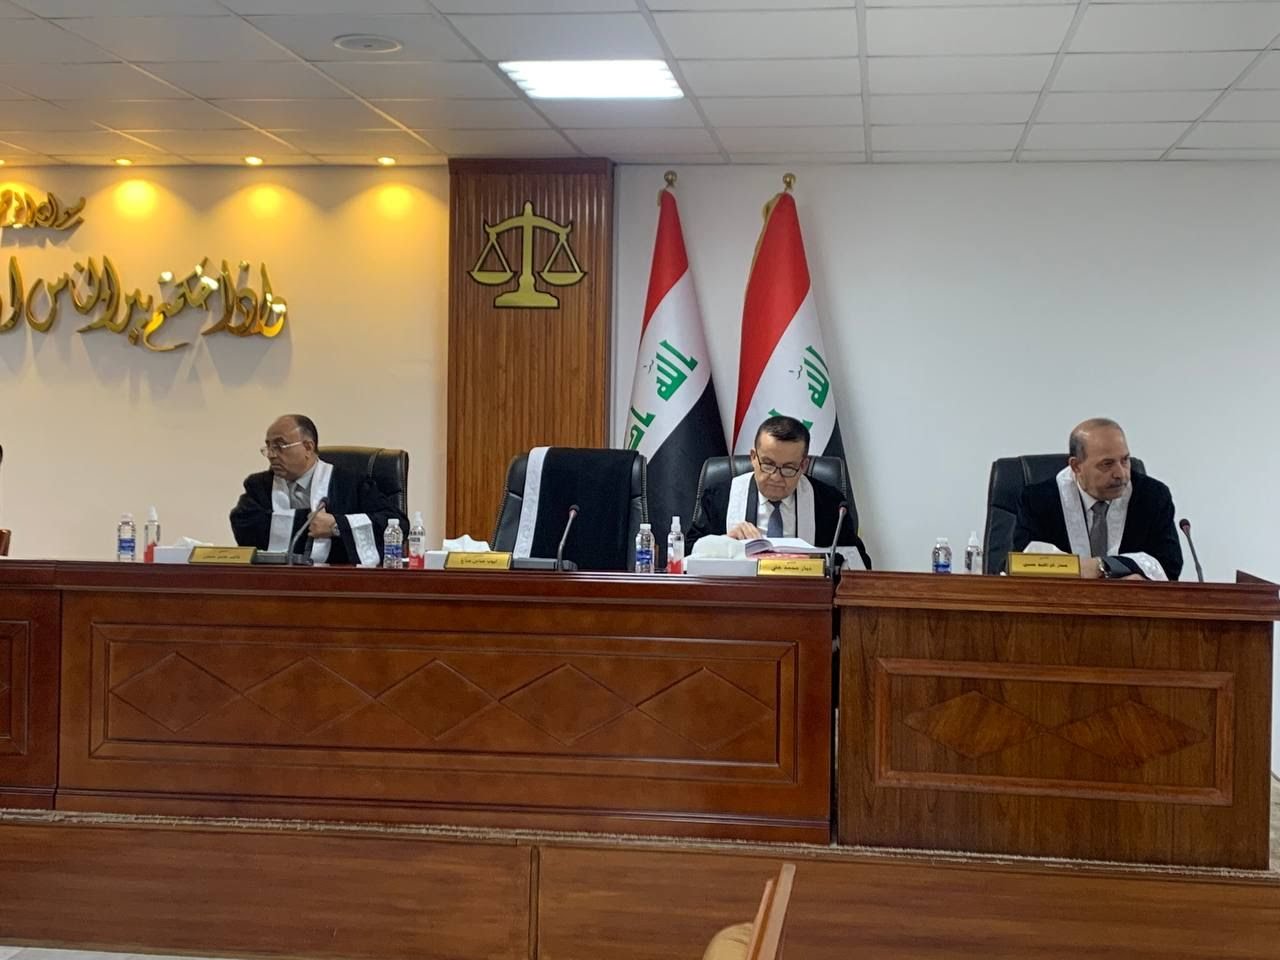  رای دادگاه فدرال عراق درباره پرونده ثبت نام نامزدهای ریاست جمهوری